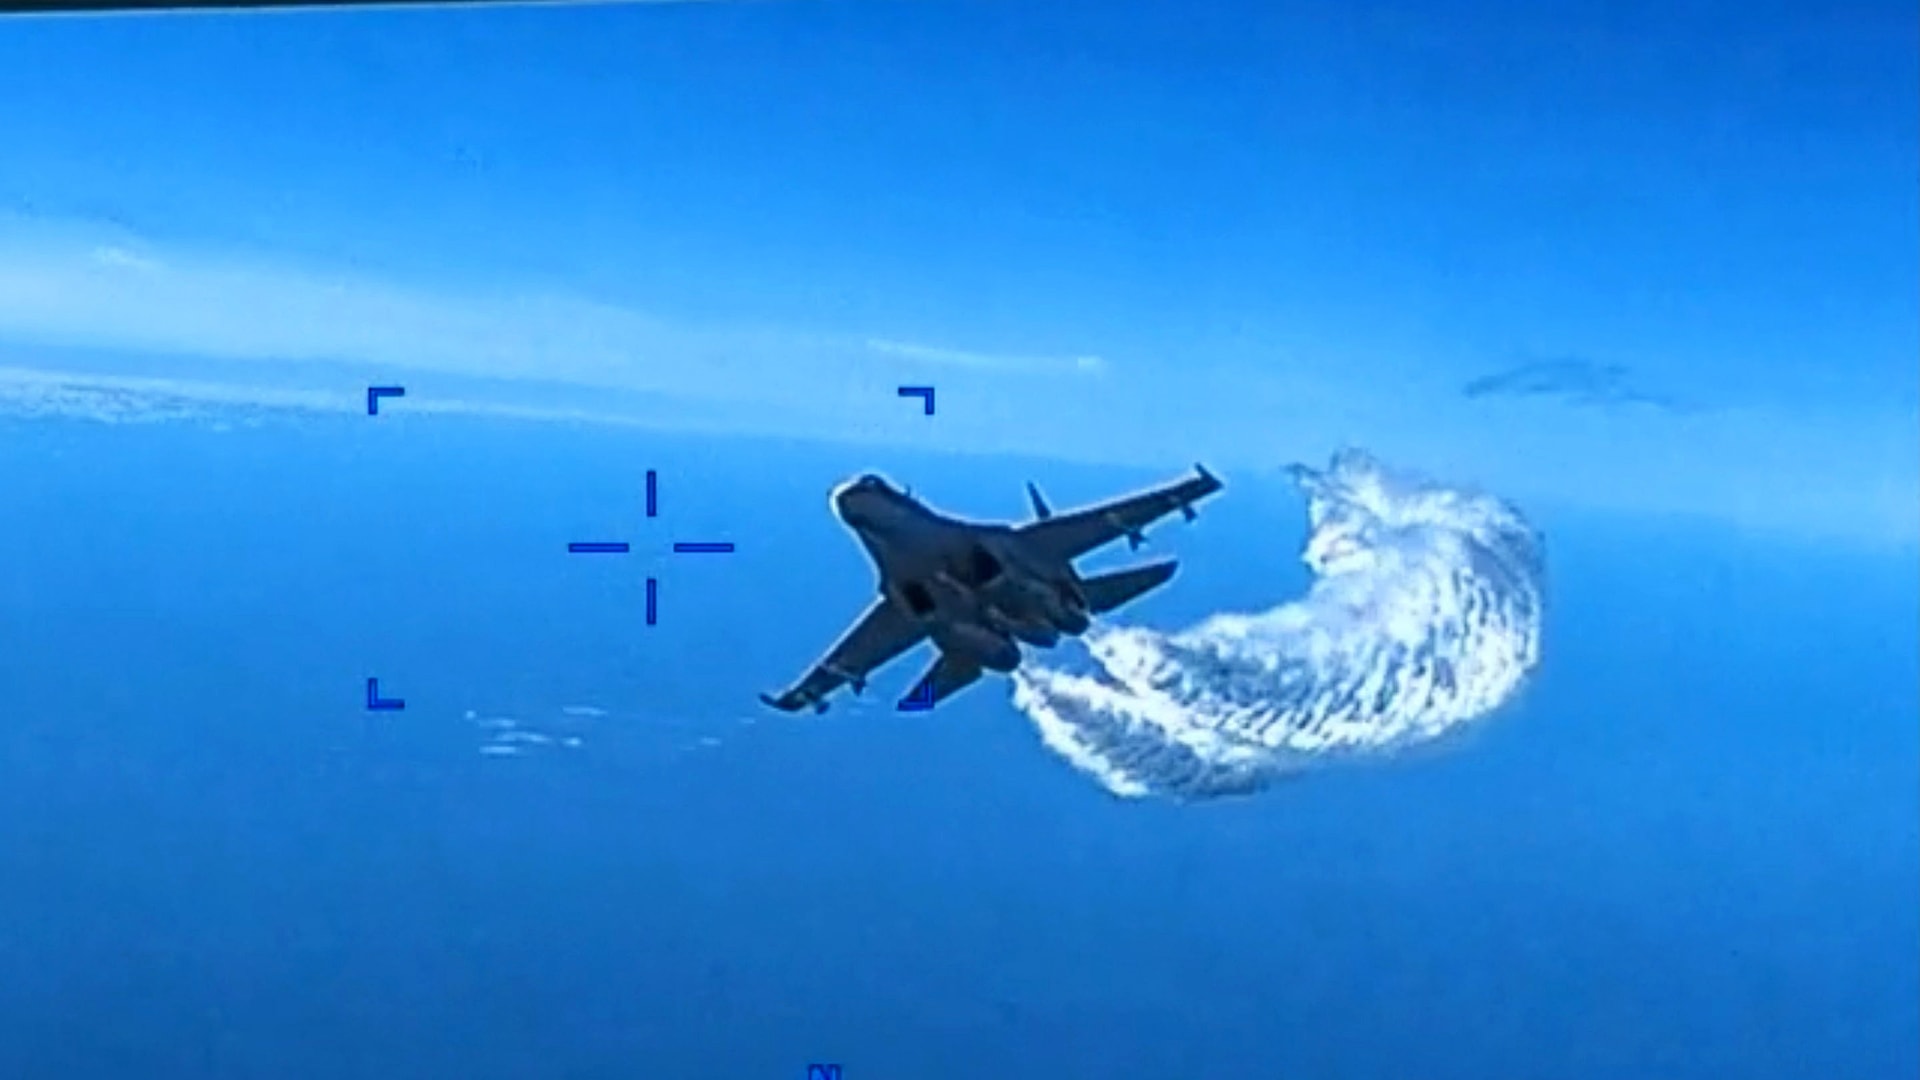 شاهد لحظة إلقاء مقاتلة روسية الوقود على "درون" أمريكية قبل سقوطها في البحر الأسود